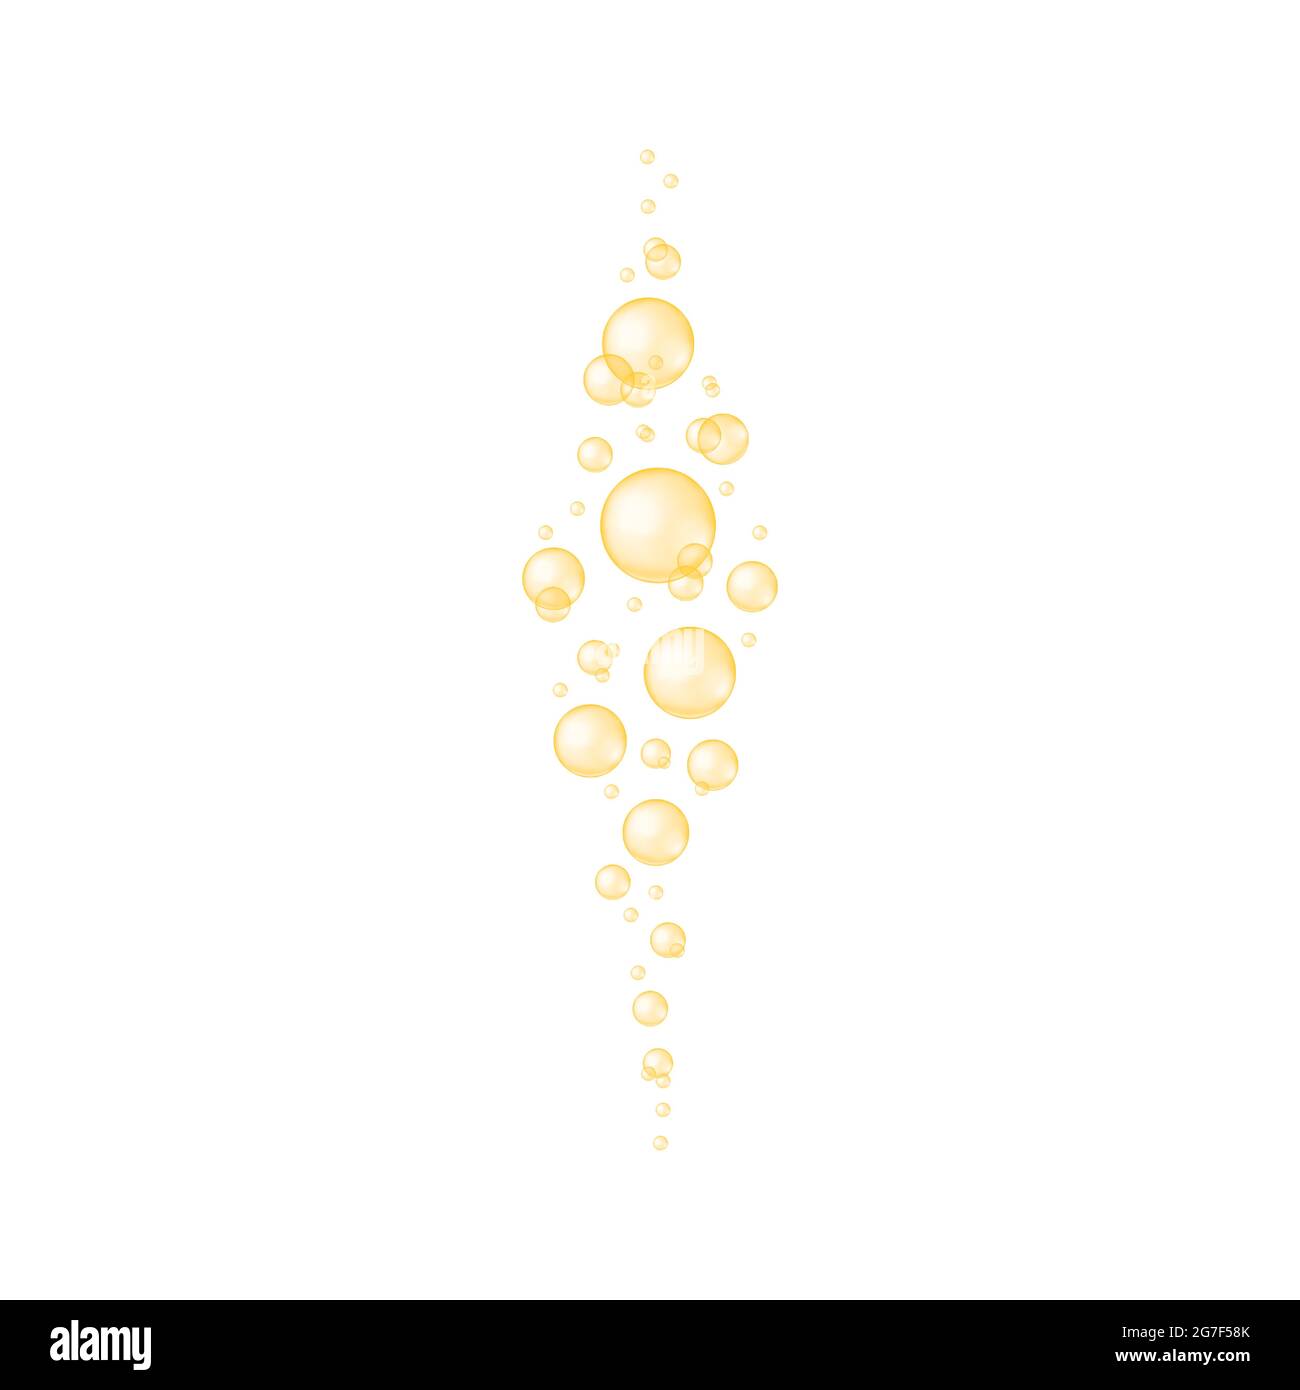 Goldene Sauerstoffblasen Textur. Glänzende Kugeln aus Kollagen, Serum, Jojoba-Kosmetiköl, Vitamin A oder E, Omega-Fettsäuren. Sprudelnder Wasserstrahl. Kohlensäurehaltiges Getränk Vektor-realistische Darstellung. Stock Vektor